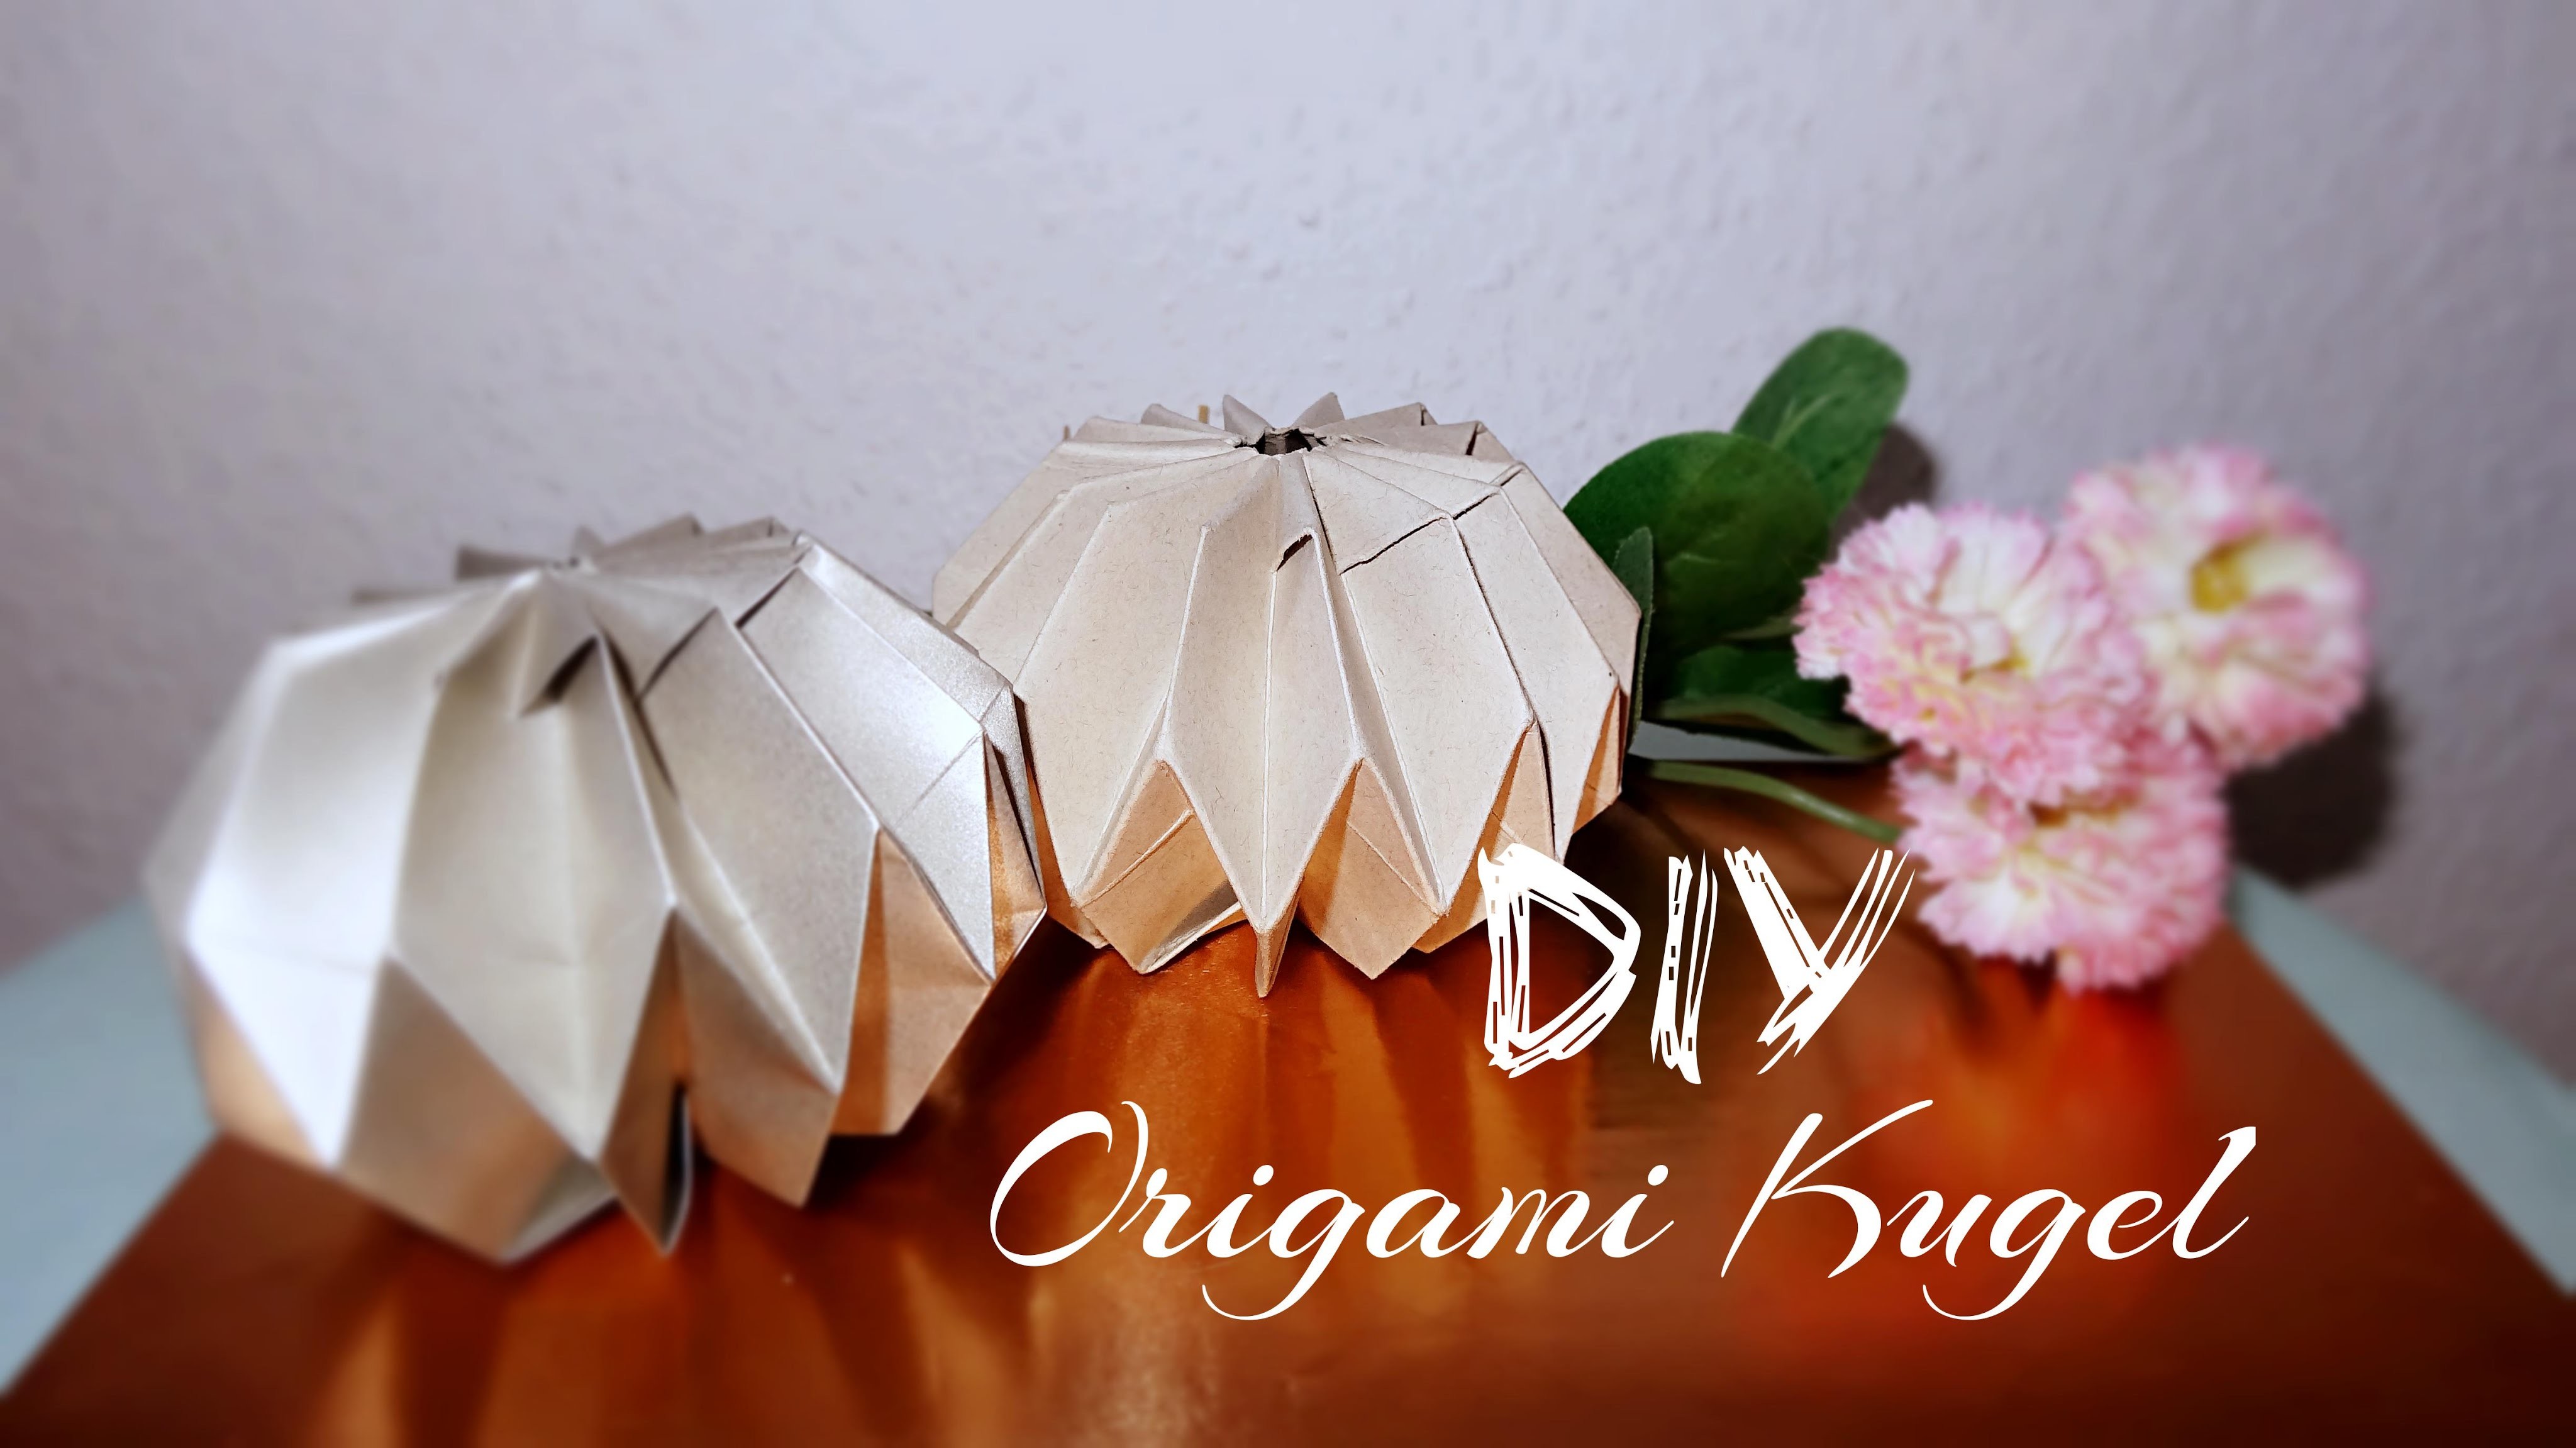 DIY Origami Kugel Tutorial